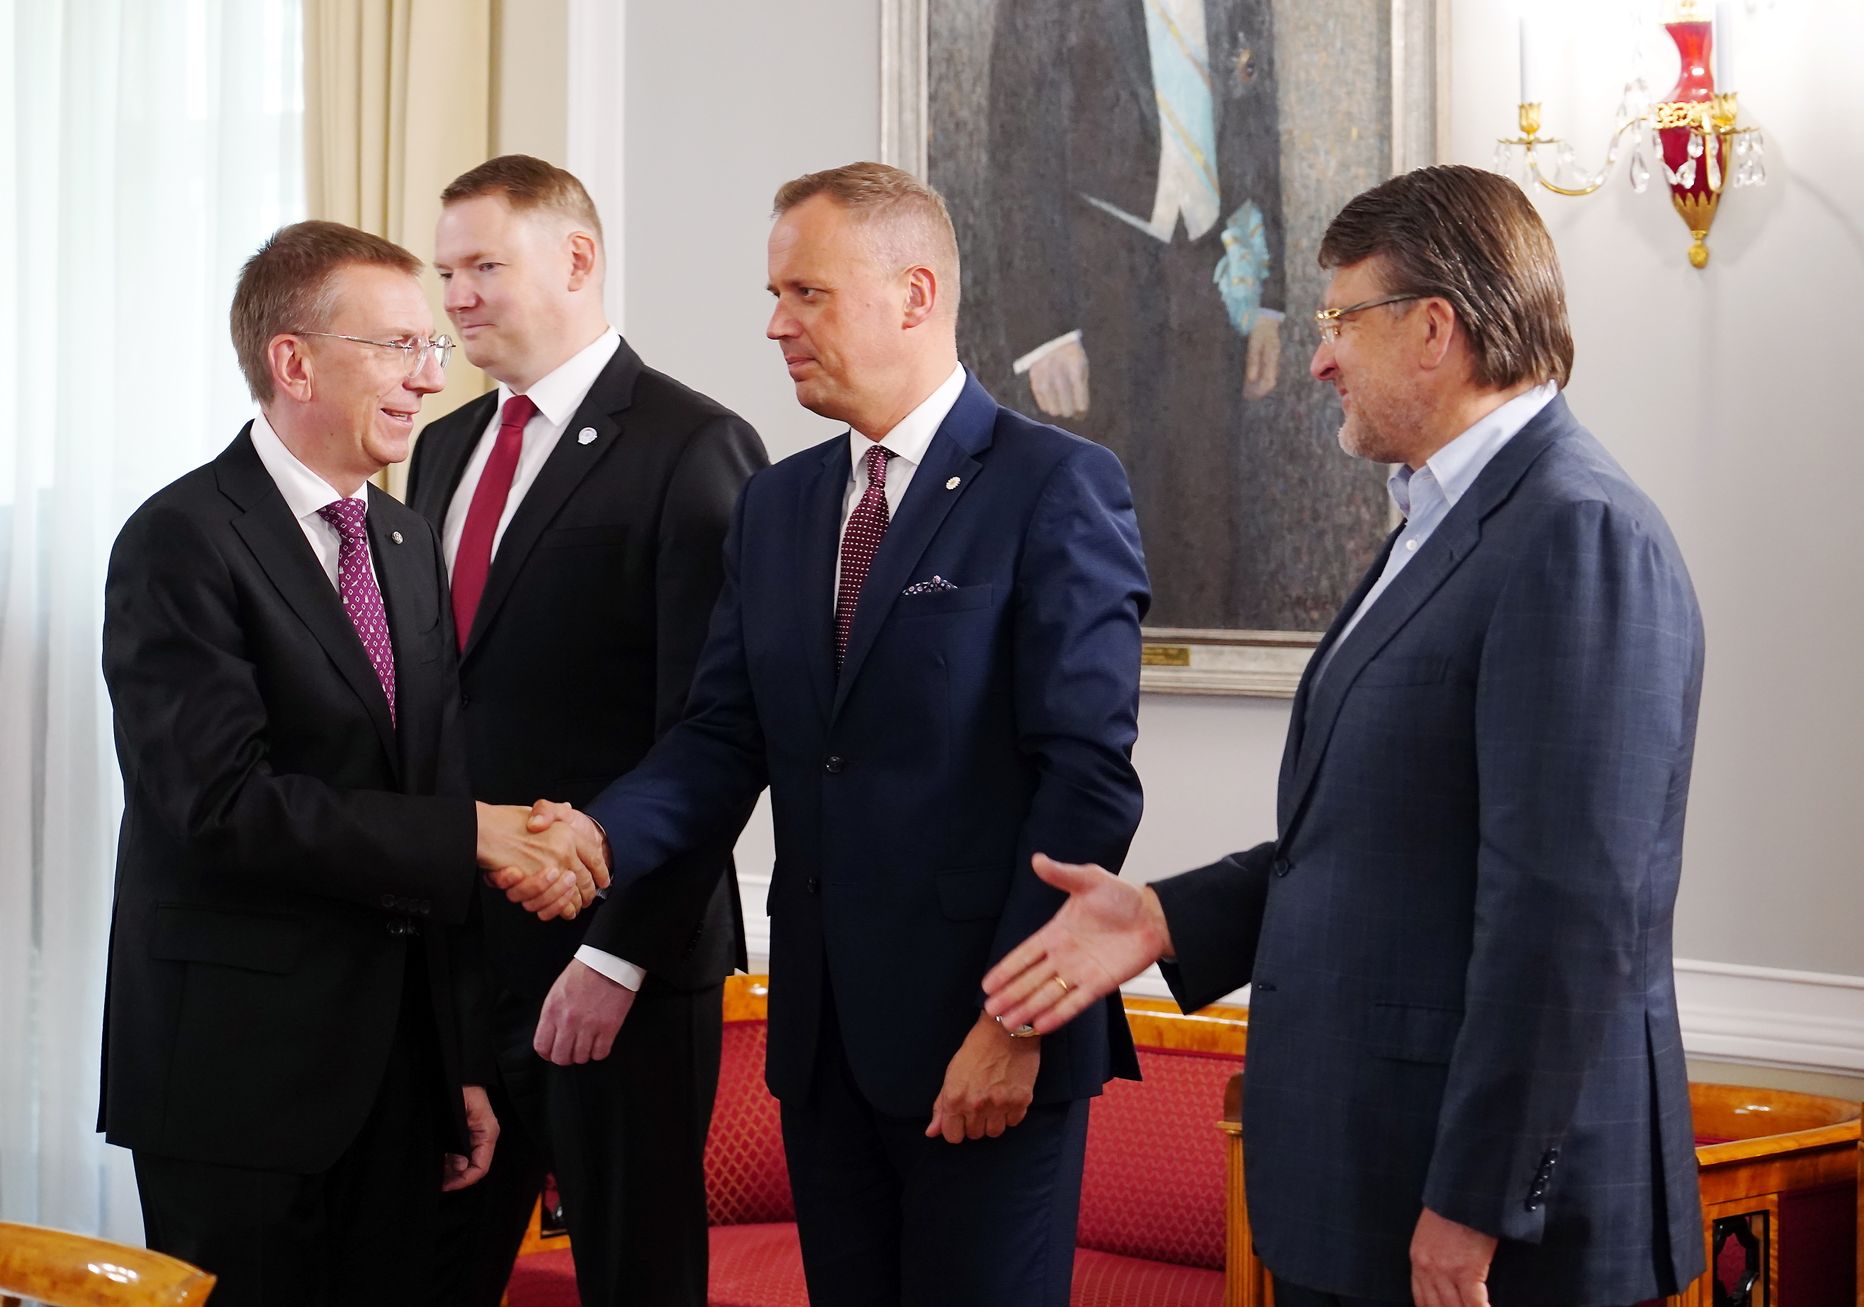 Valsts prezidents Edgars Rinkēvičs (no kreisās), Saeimas priekšsēdētājs Edvards Smiltēns, partijas "Apvienotais saraksts" Saeimas frakcijas vadītājs Edgars Tavars un partijas "Latvija pirmajā vietā" Saeimas frakcijas vadītājs Ainārs Šlesers tikšanās laikā Rīgas pilī.